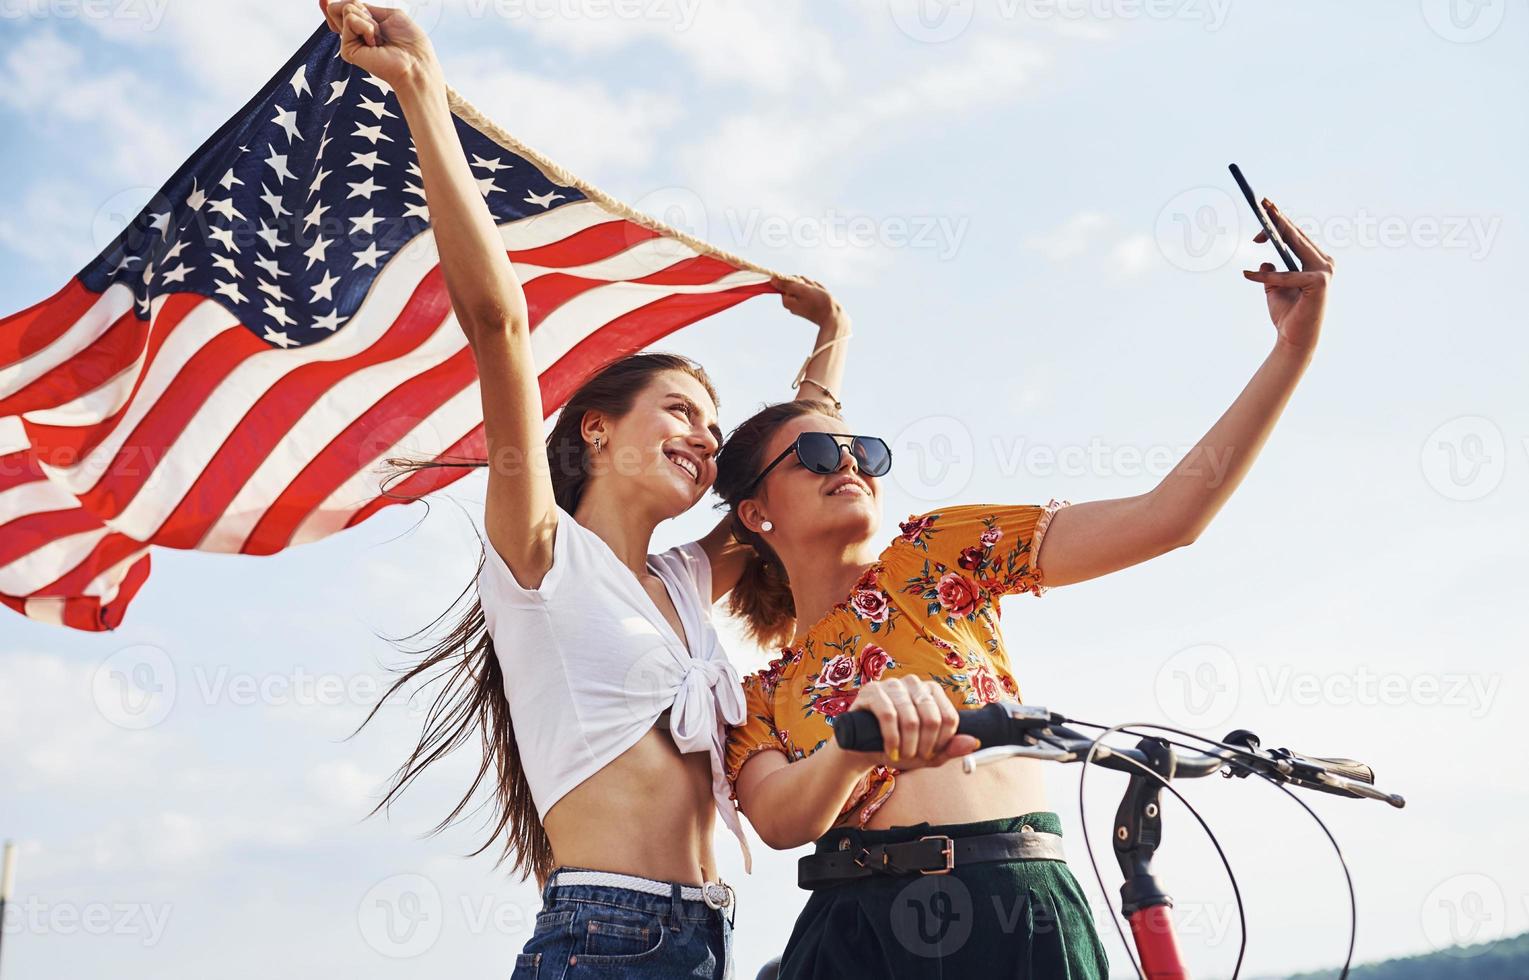 contra o céu nublado. duas mulheres alegres patrióticas com bicicleta e bandeira dos eua nas mãos fazem selfie foto